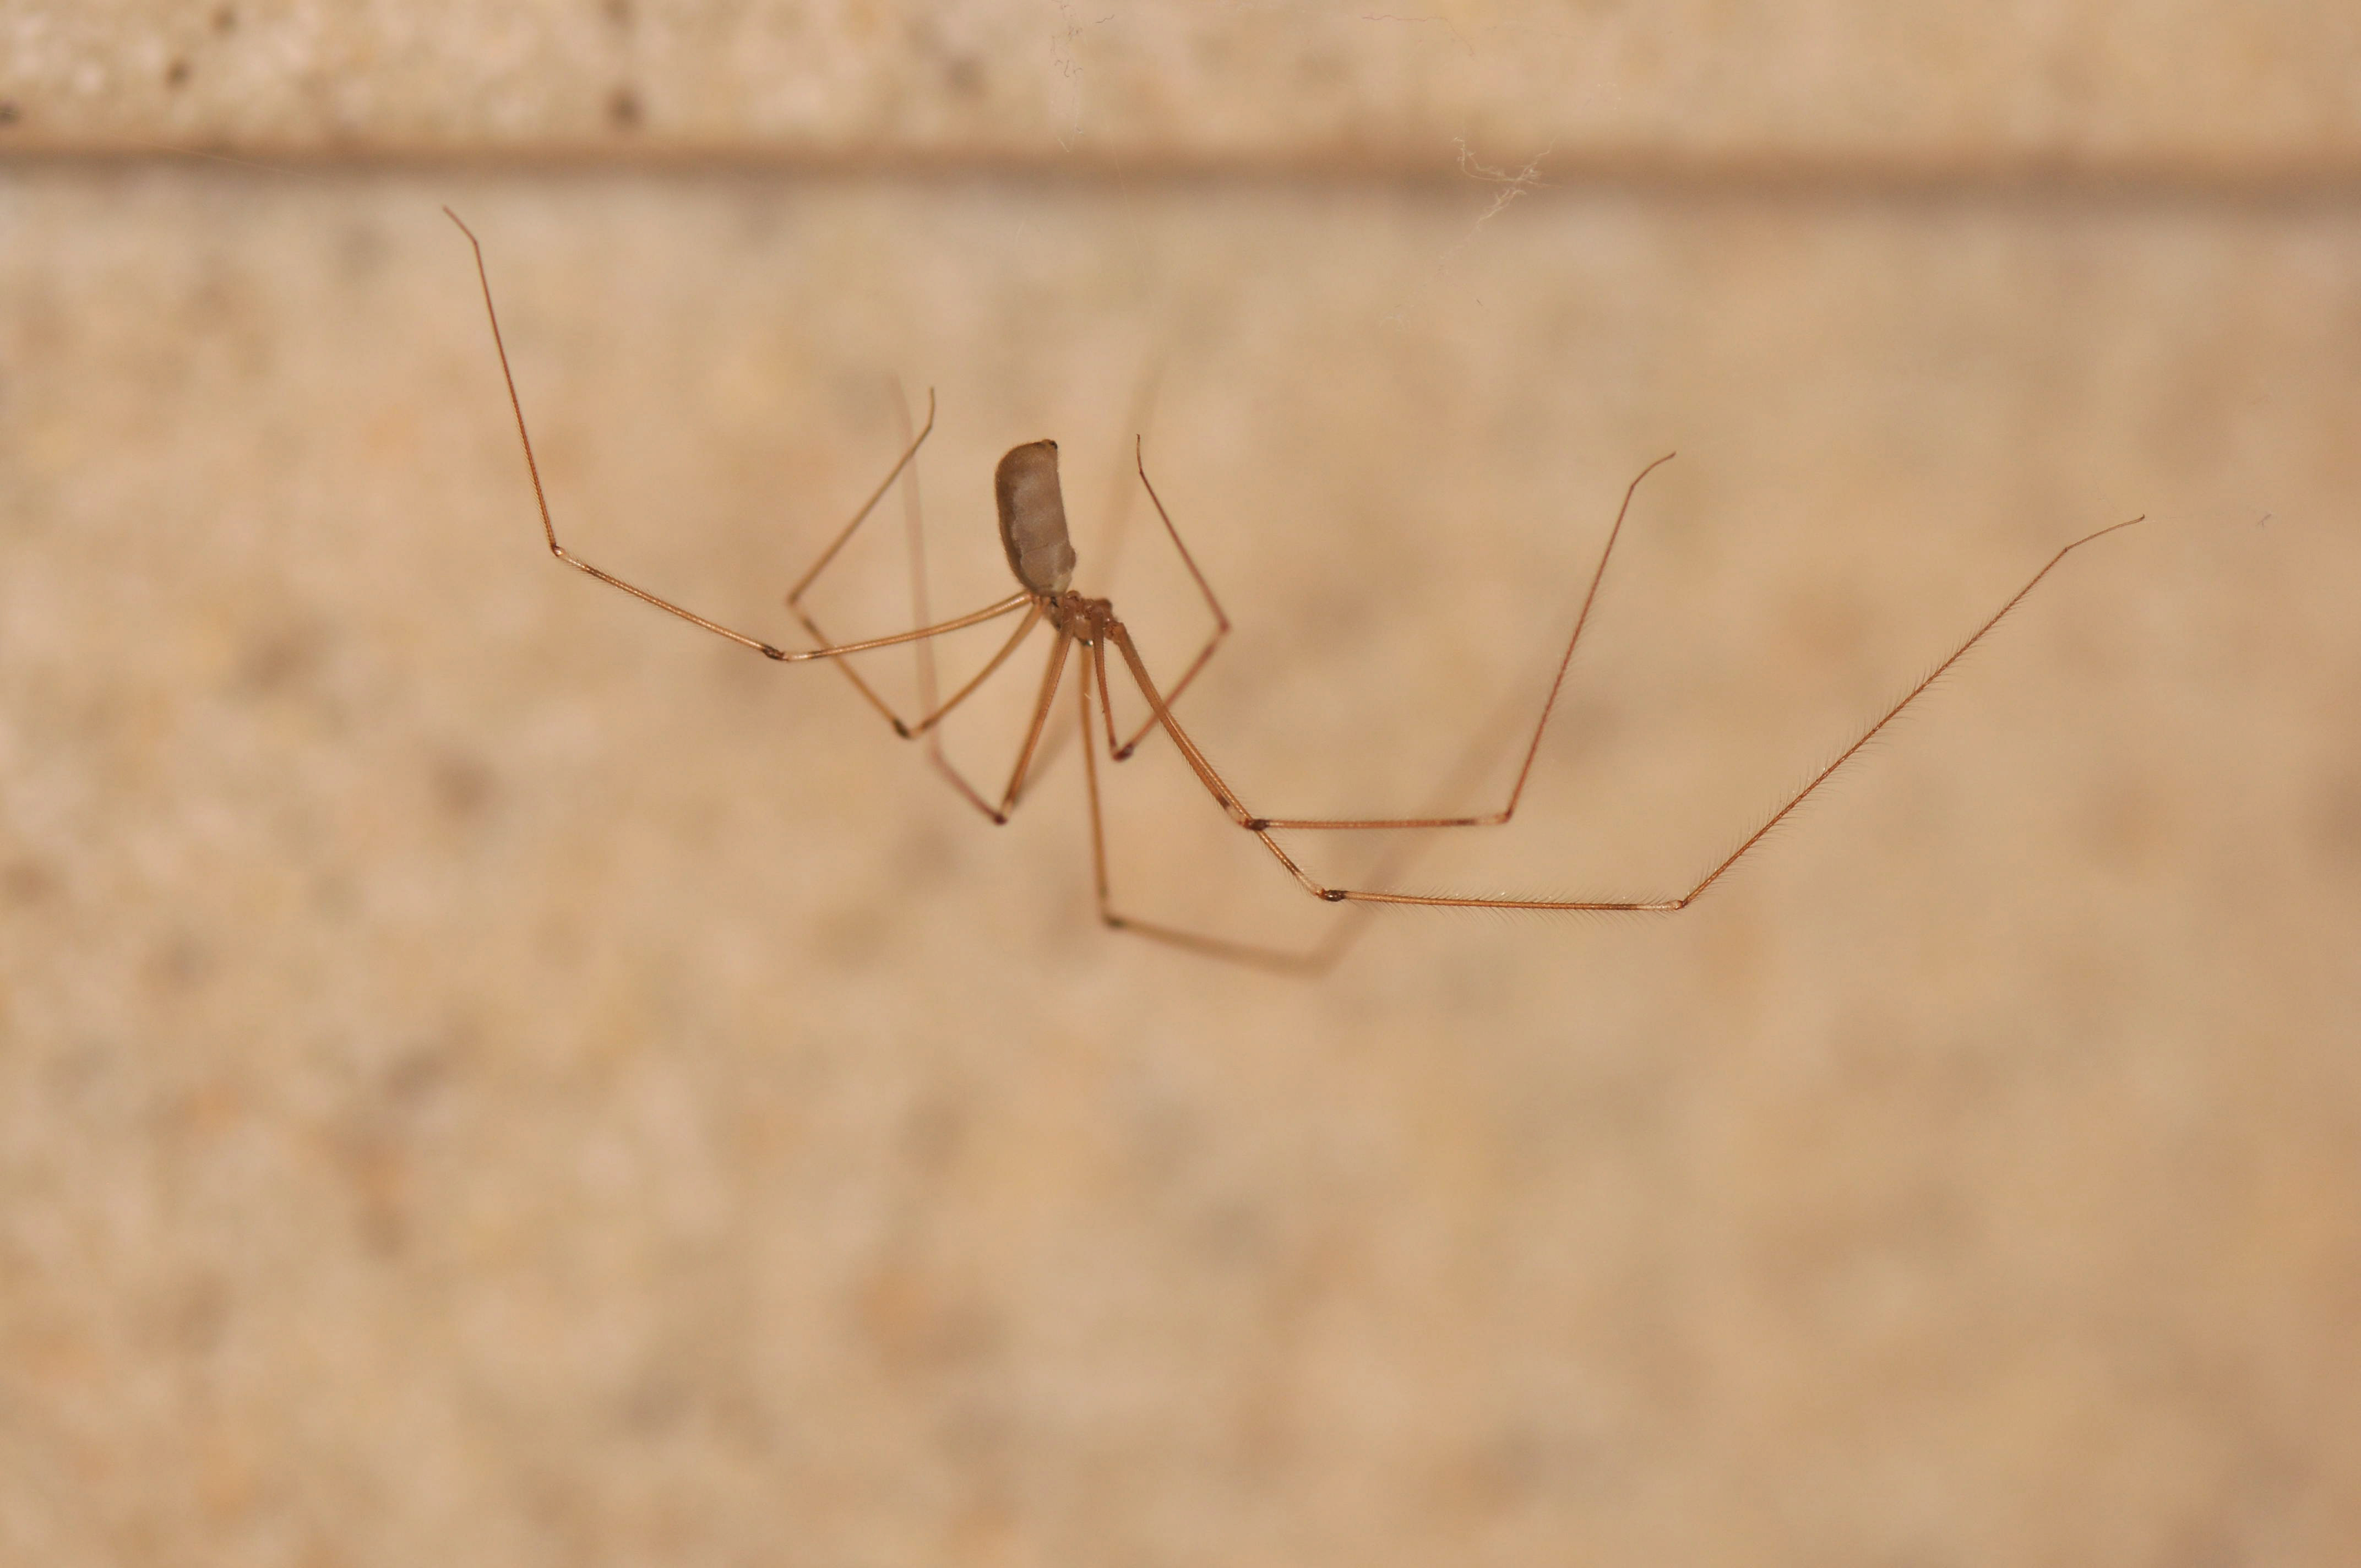 A cellar spider